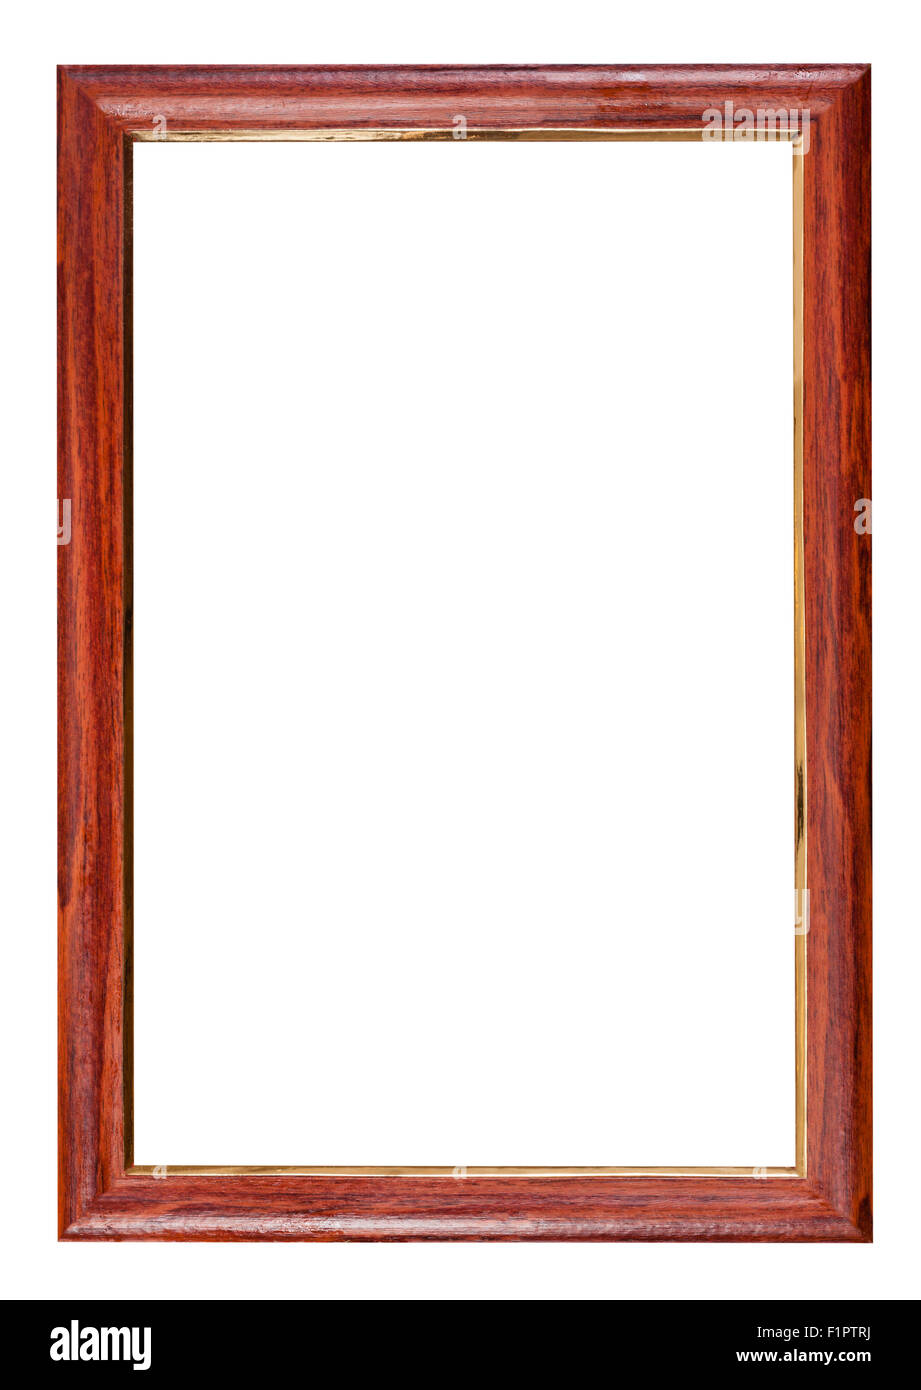 En bois brun rouge verticale avec cadre photo cut out espace blanc isolé sur fond blanc Banque D'Images